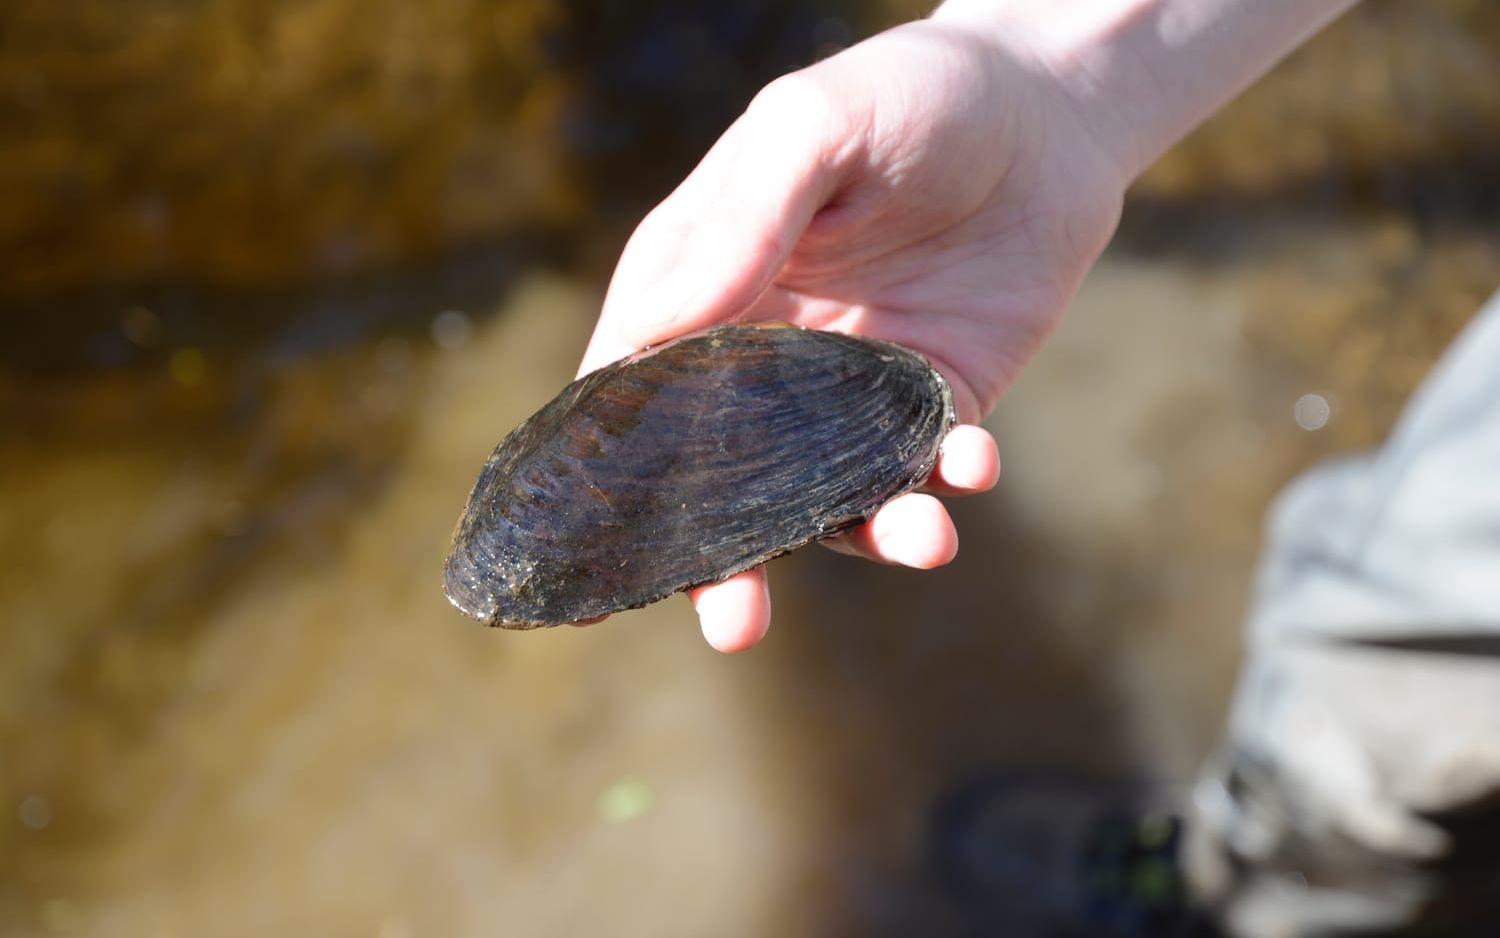 Alla de flyttade flodpärlmusslorna är kvar. Här syns en vuxen mussla på ungefär 5 centimeter. Bild: Karina Hansson